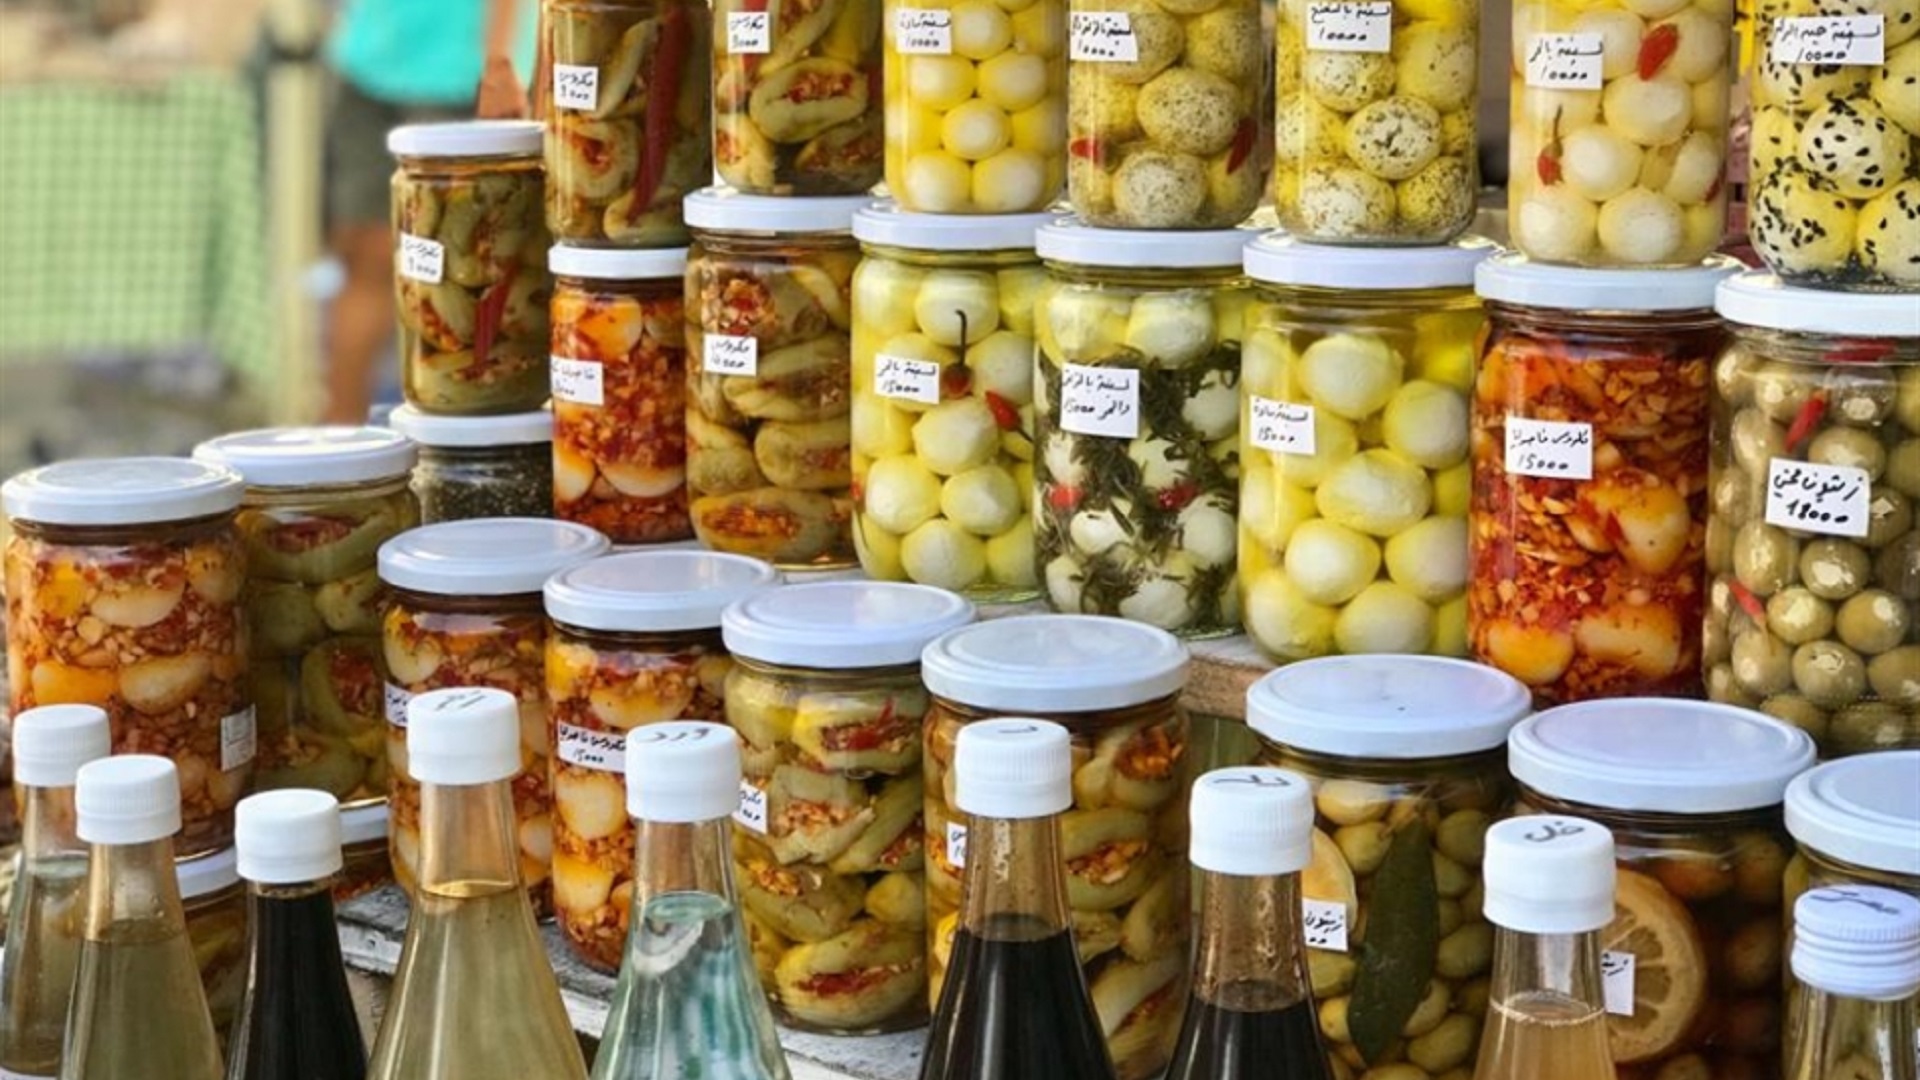 المونة اللبنانية: تراث تخطى المأكولات الريفية البسيطة بفضل "السوشيال ميديا"